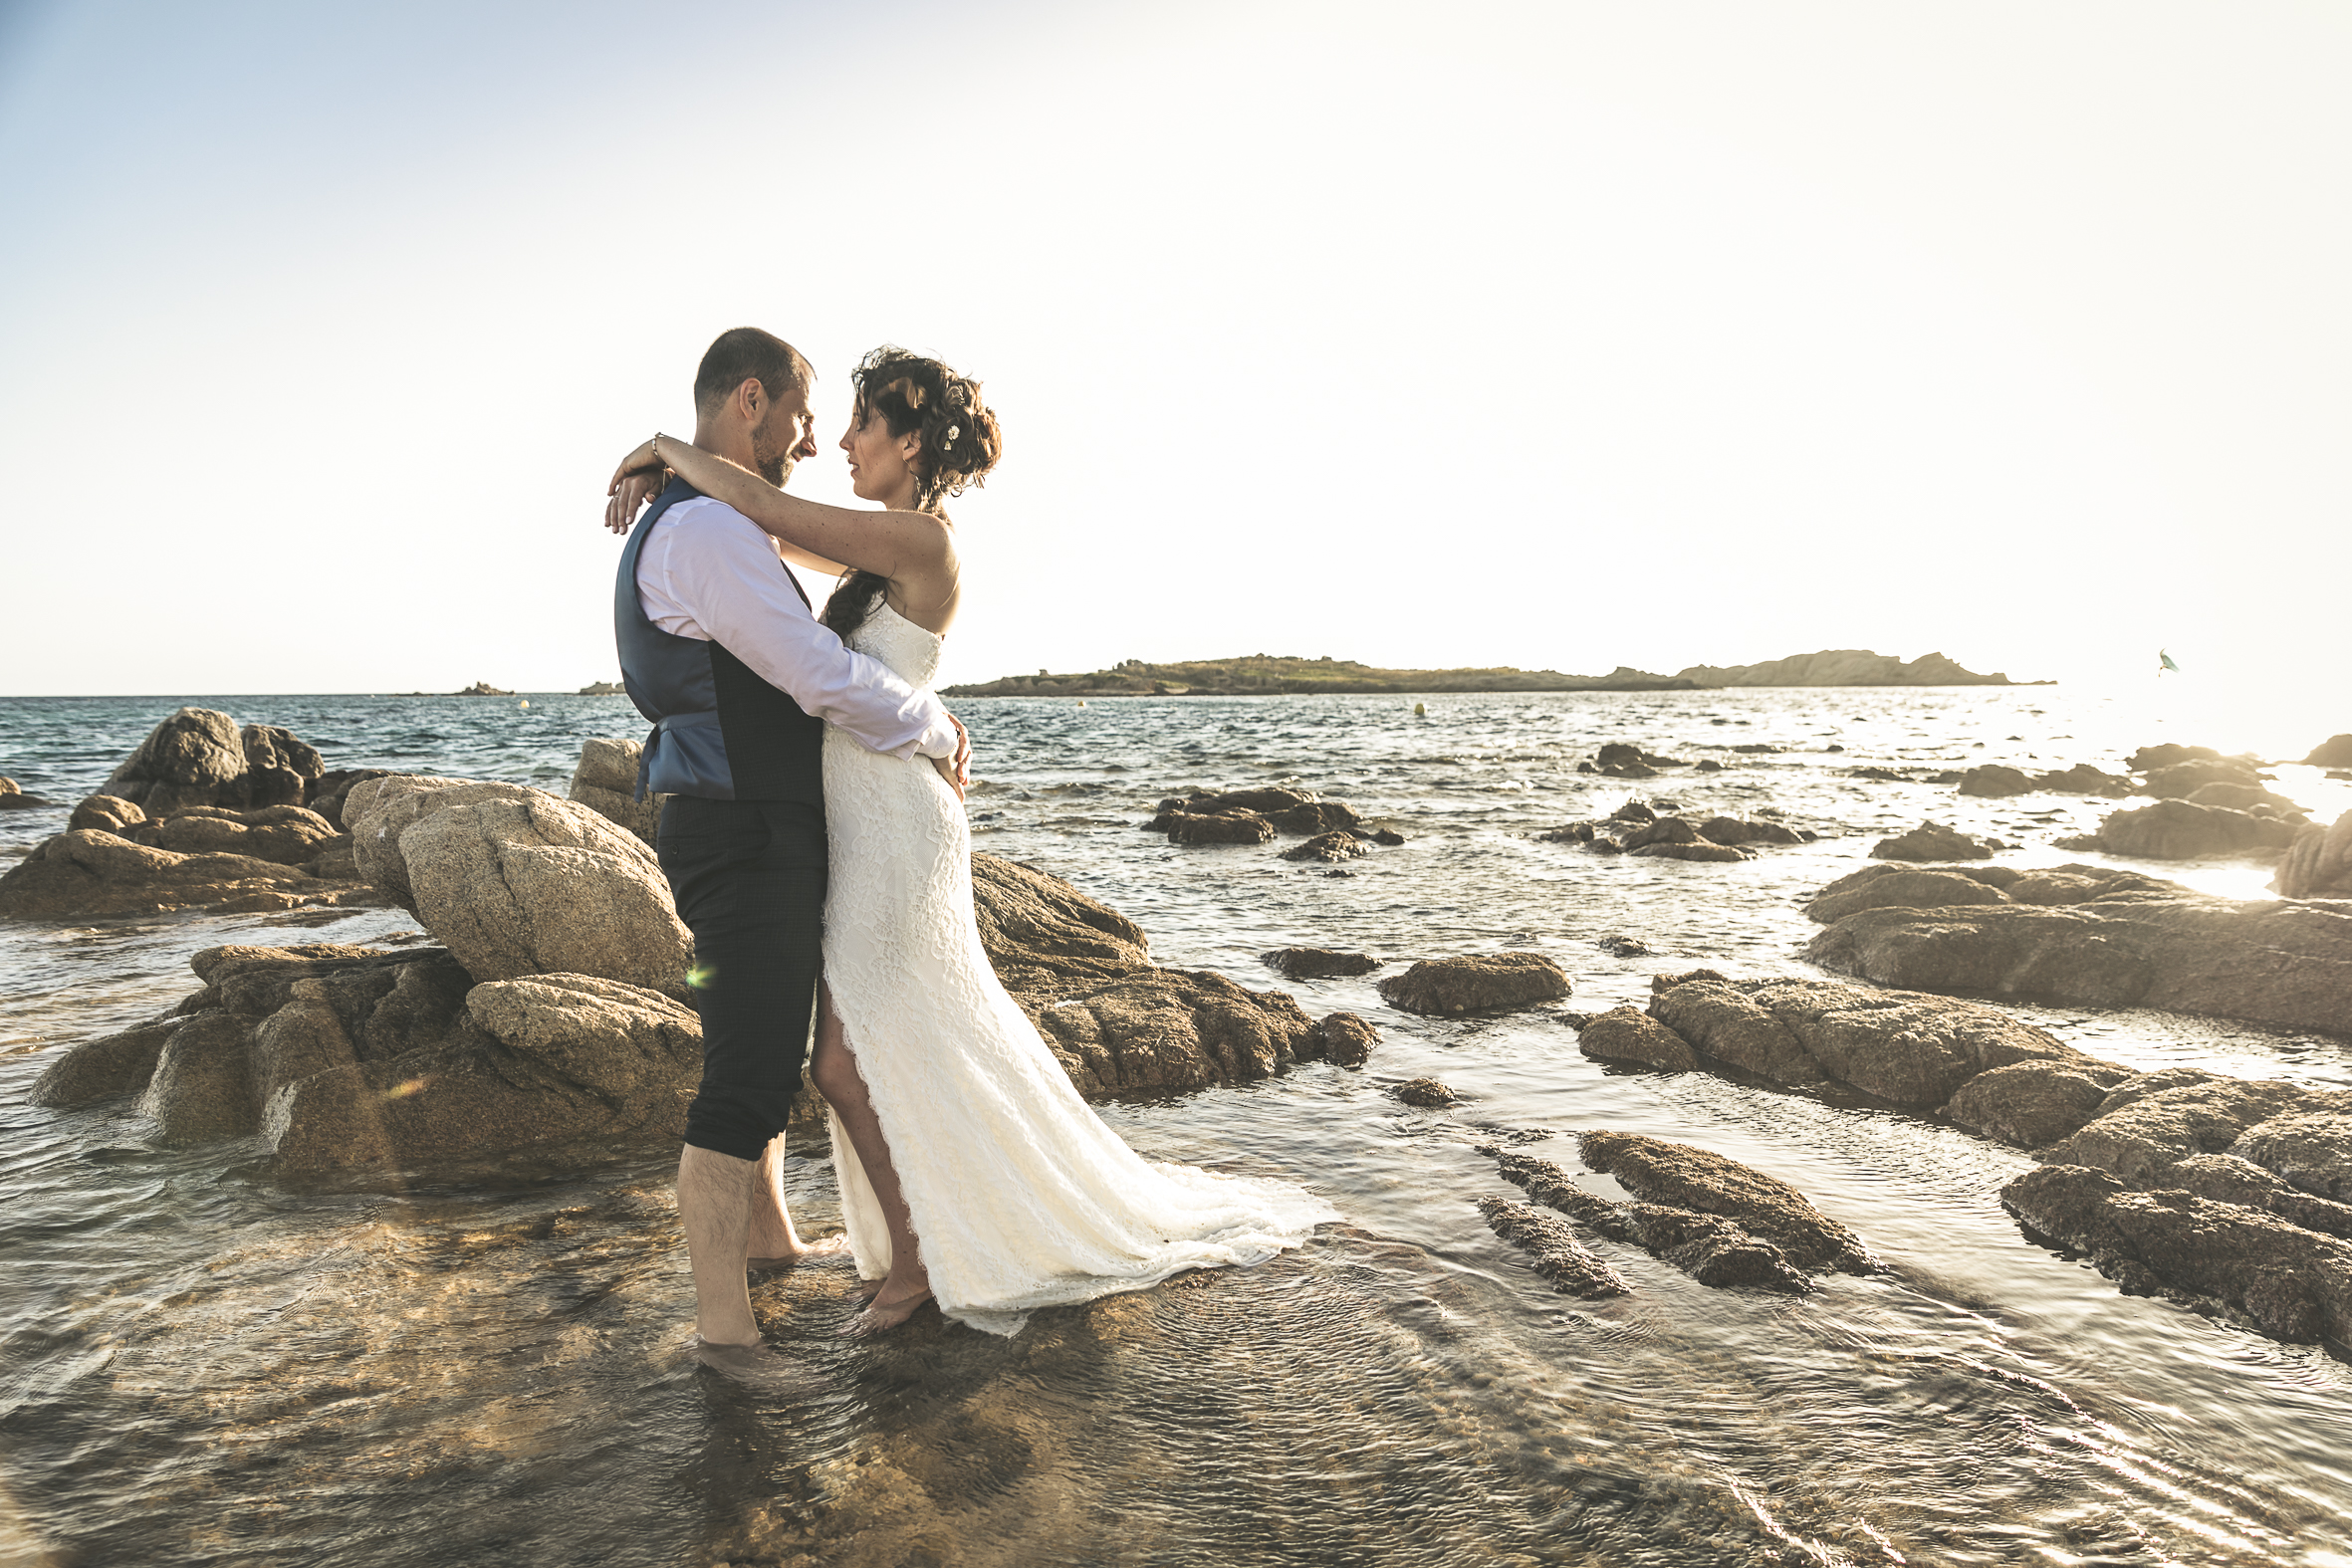 Mariage en Corse-Mariage Corse Sud-Mariage Bonifacio-photographe mariage-Mariage plage-mariage sur la plage-mariage les pieds dans l'eau